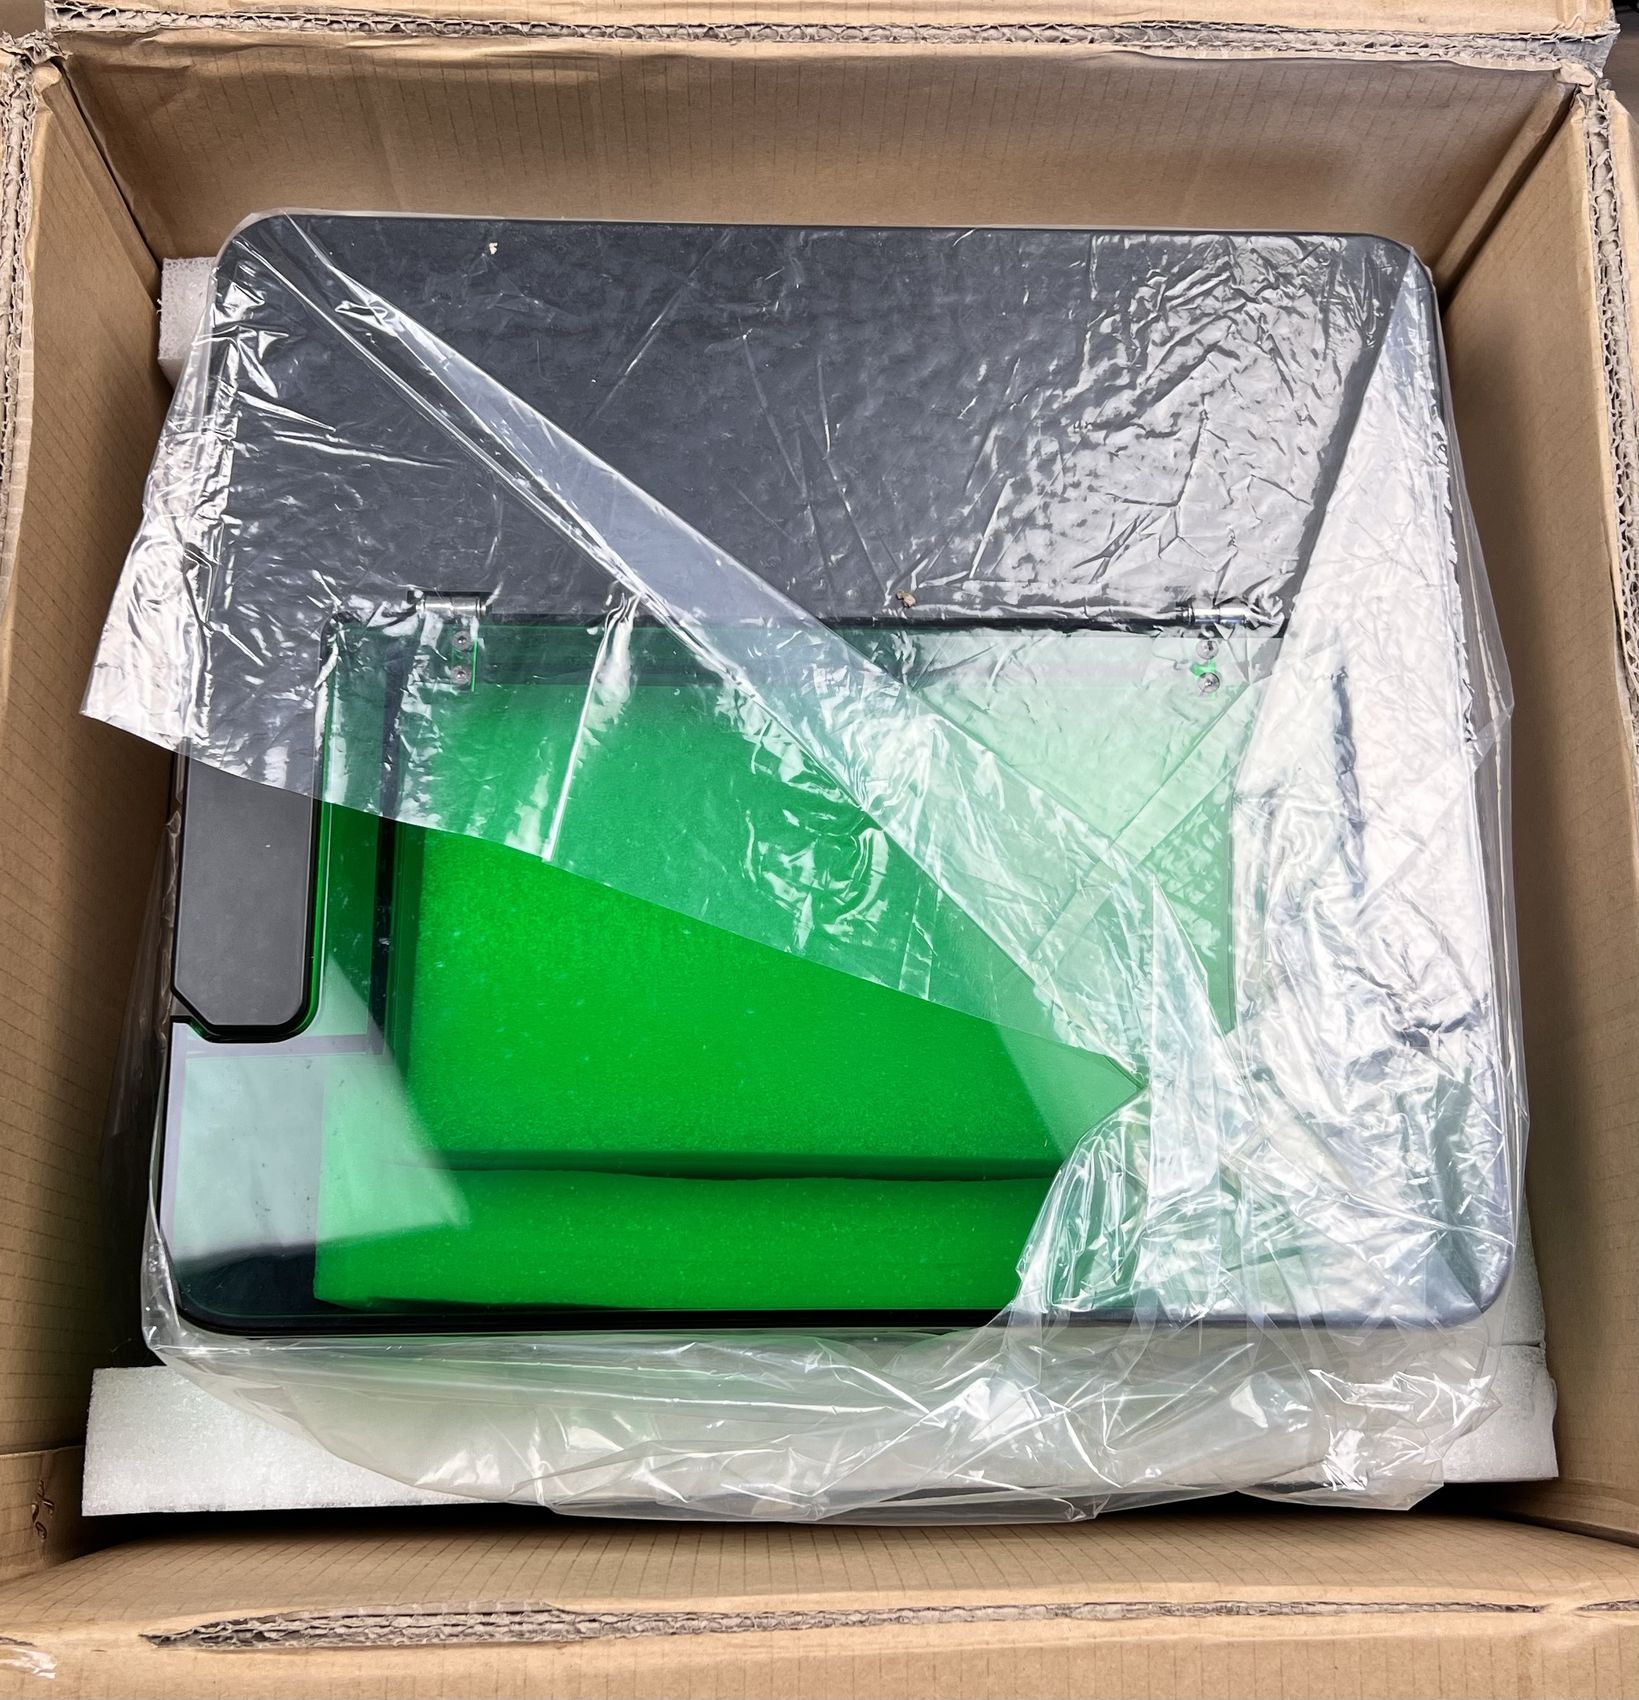 UniFormation GKTWO Resin Printing Kit Packaging7 | UniFormation GKTWO Review: With W230 and D265 Post Processing Kit